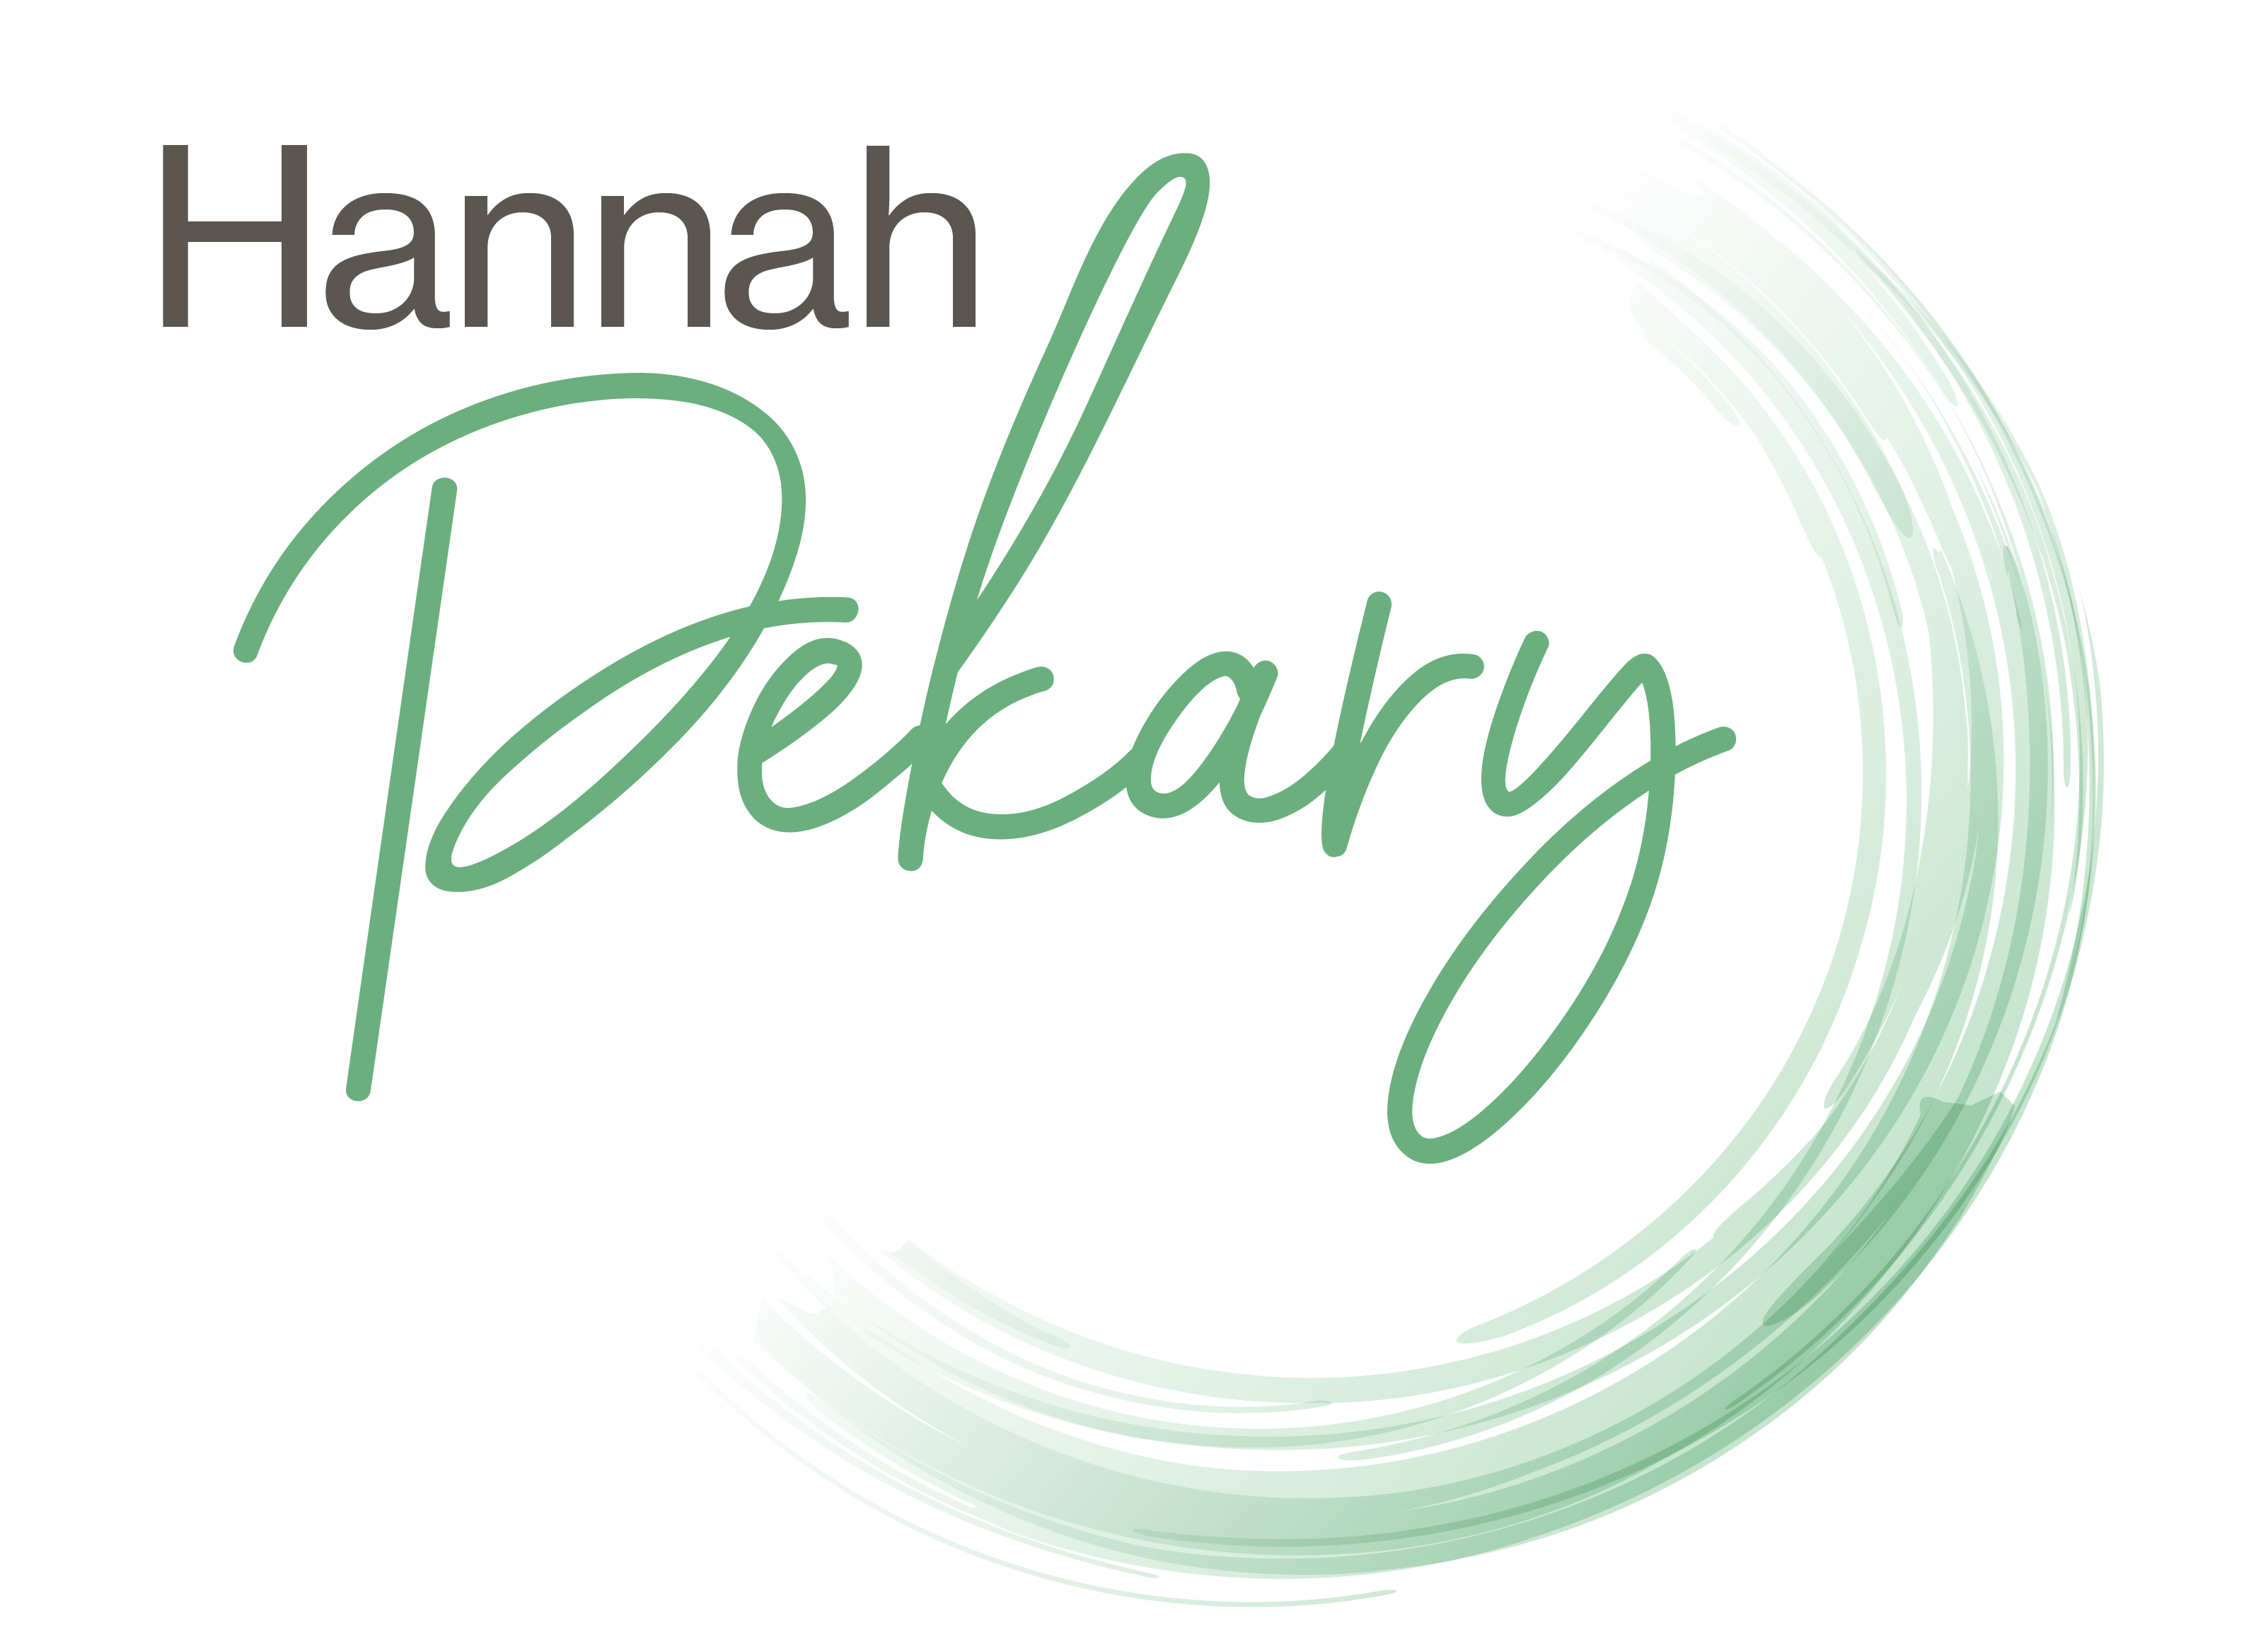 Hannah Pekary